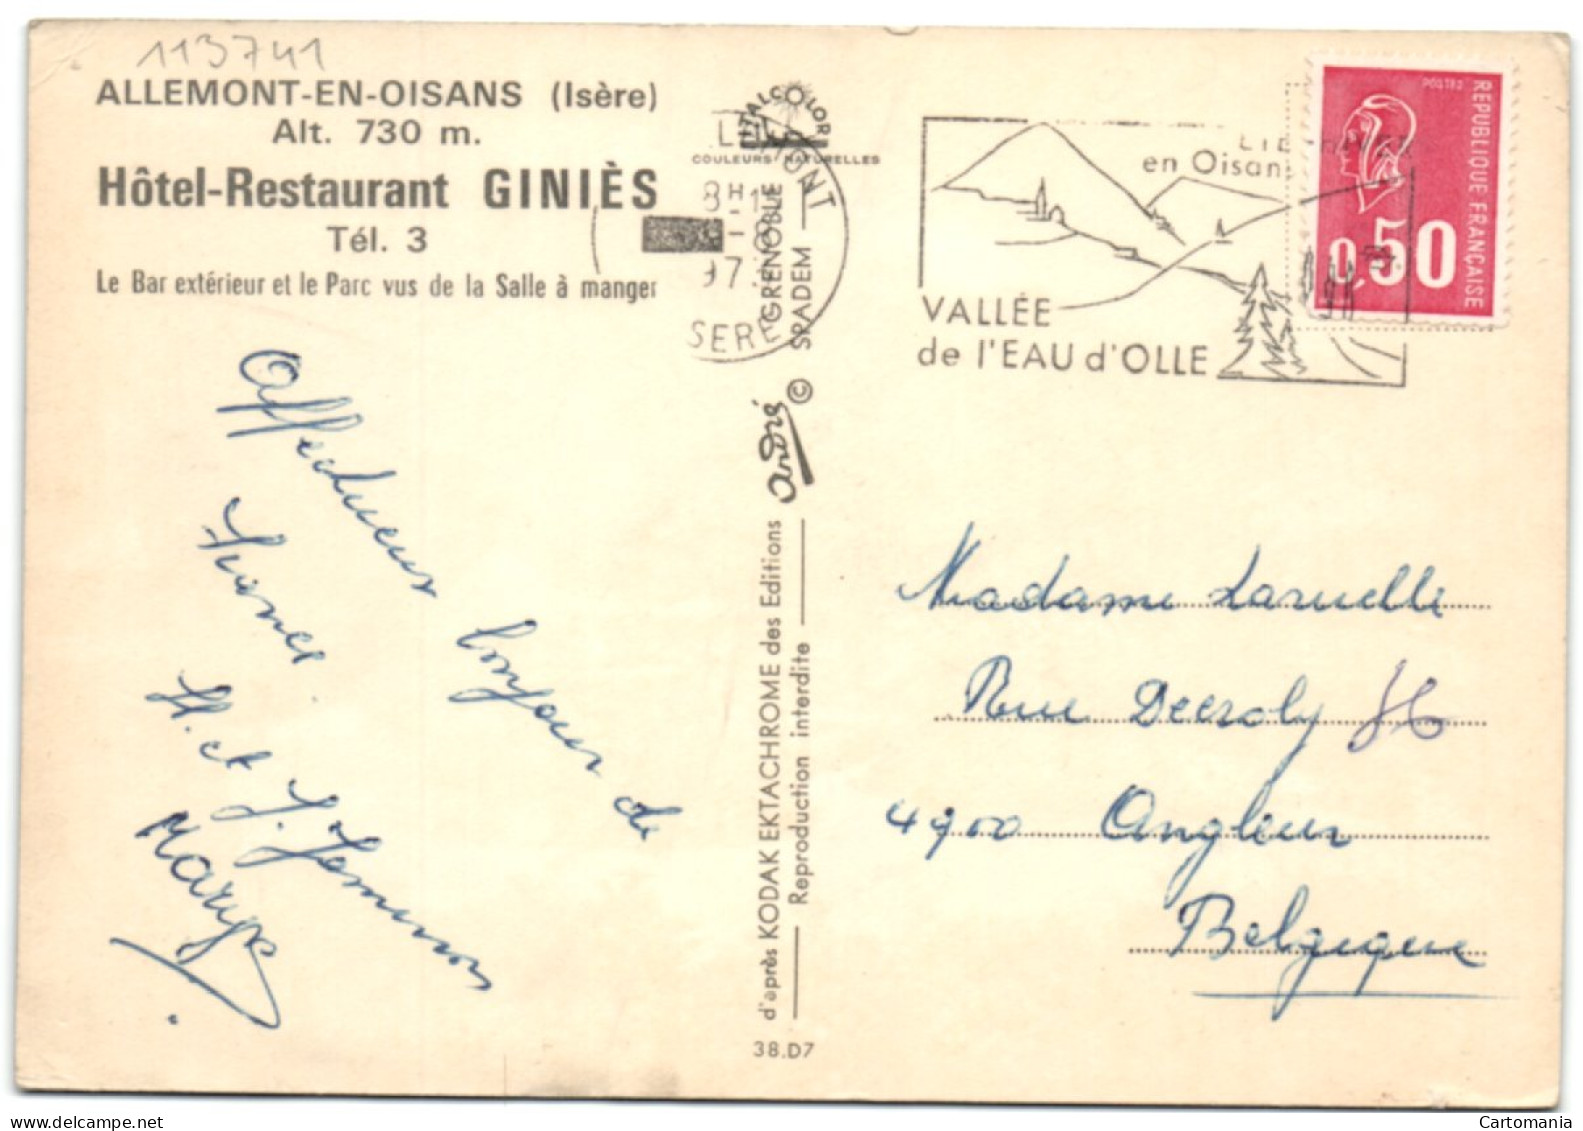 Allemont-en-Oisans - Hôtel-Restaurant Giniès - Allemont